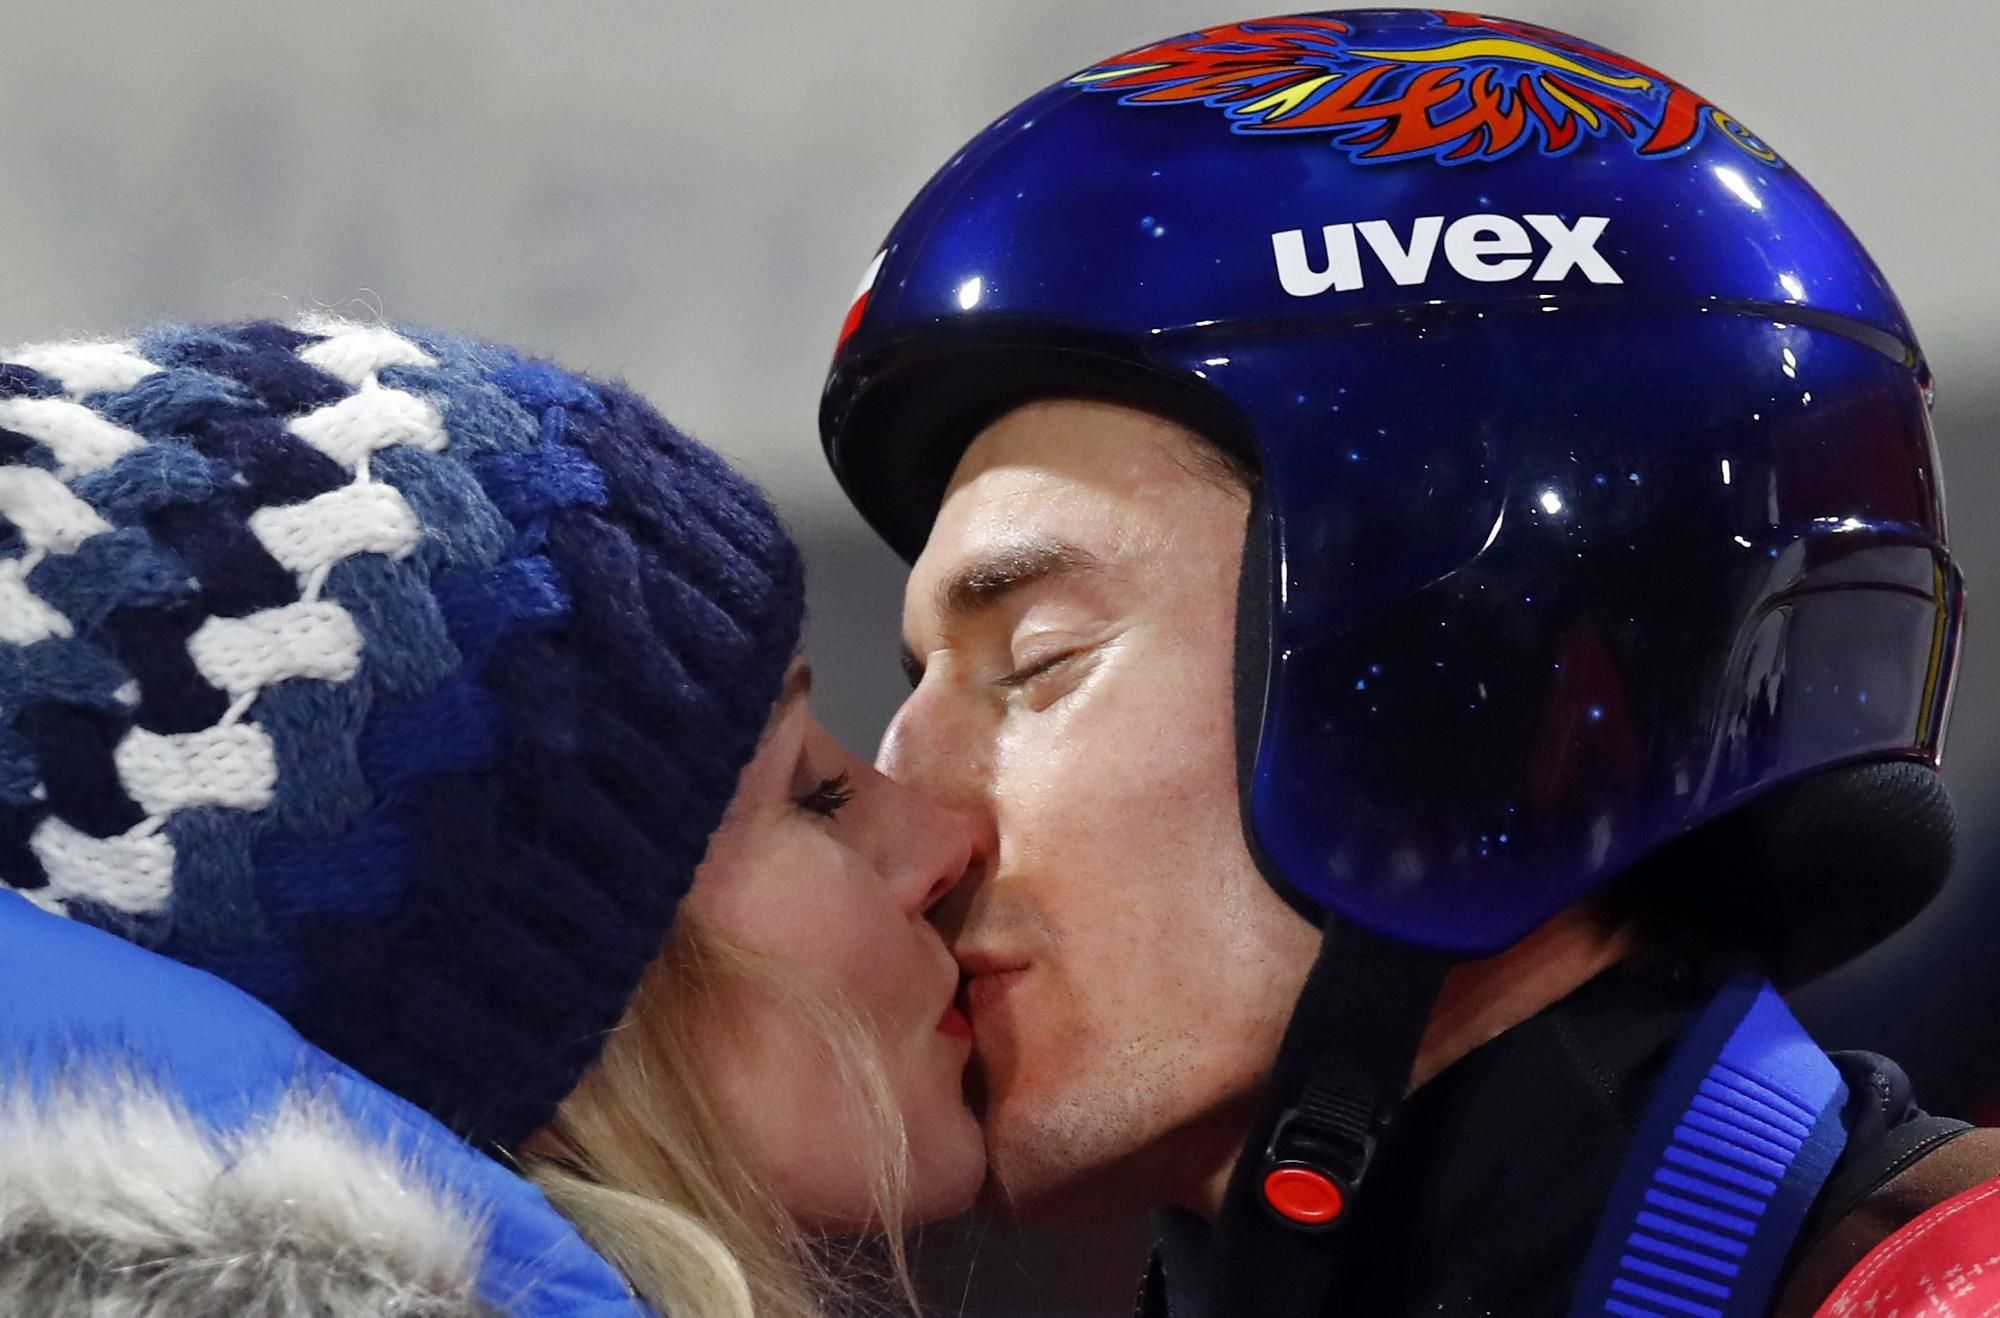 Poľský skokan na lyžiach Kamil Stoch bozkáva manželku Ewu